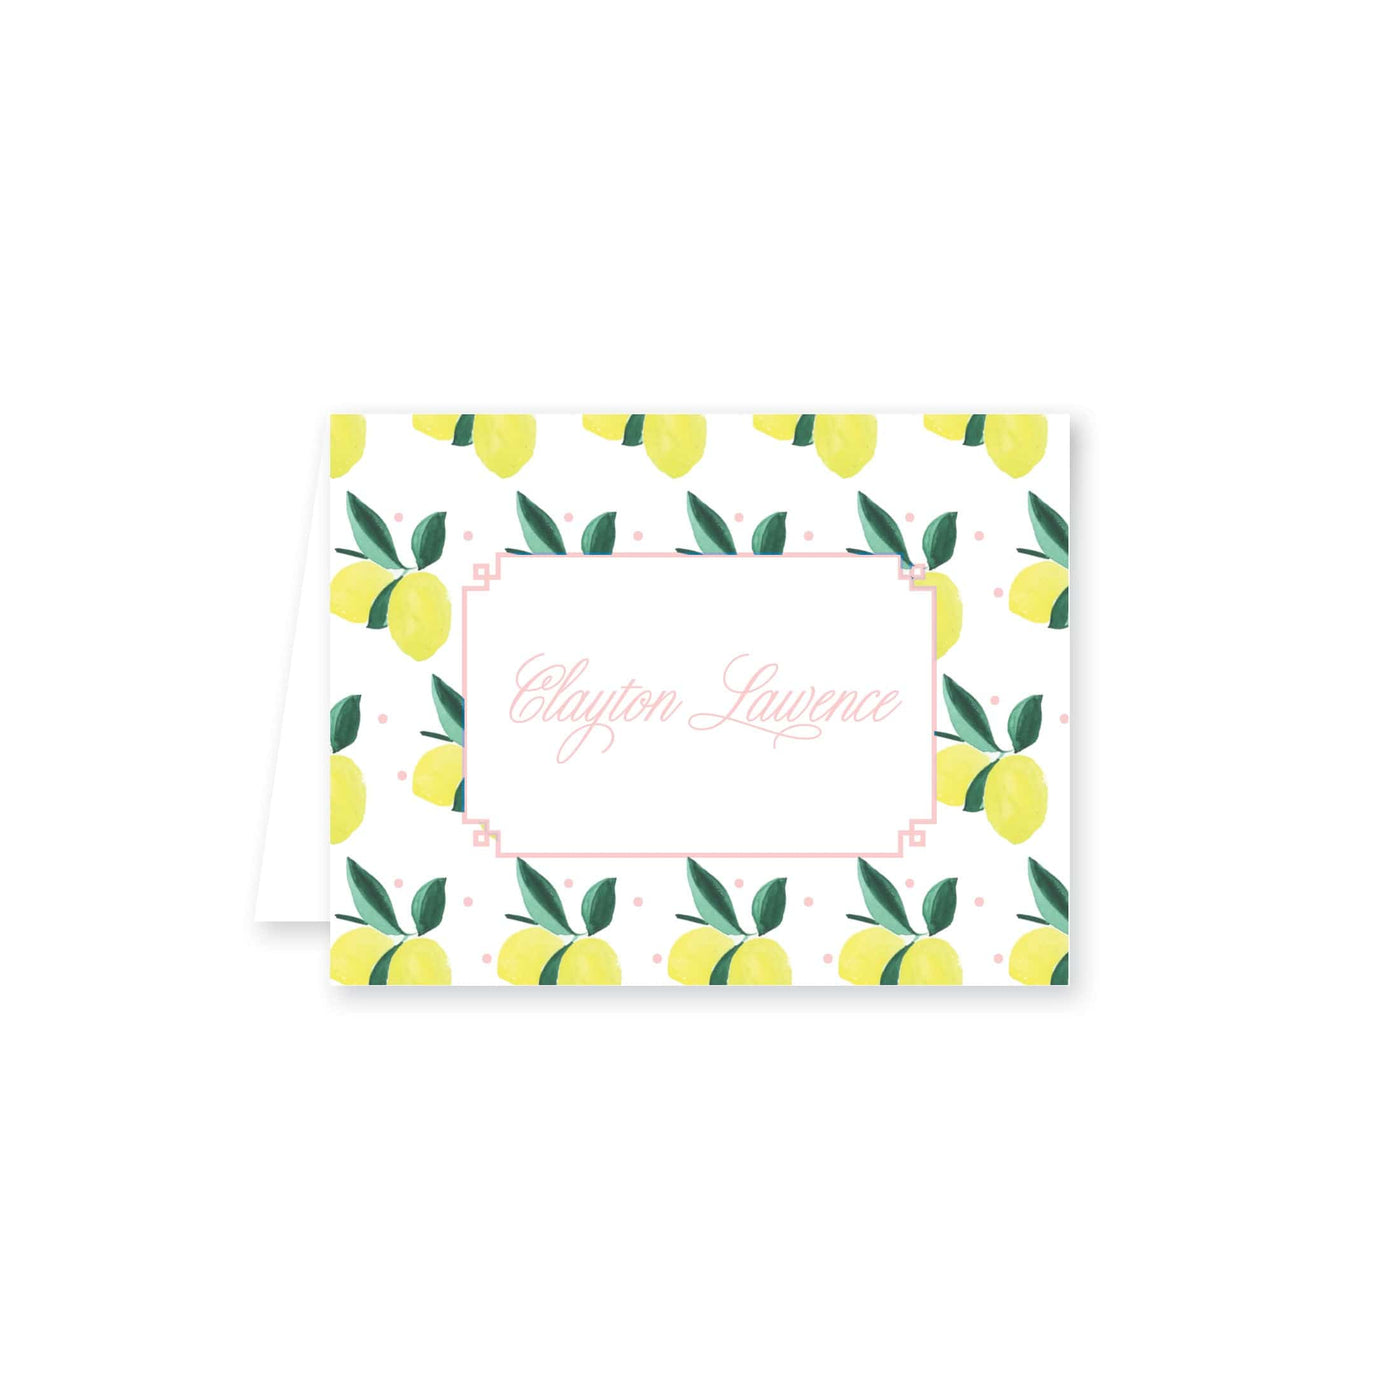 Lemon Polka Dot Folded Note Card